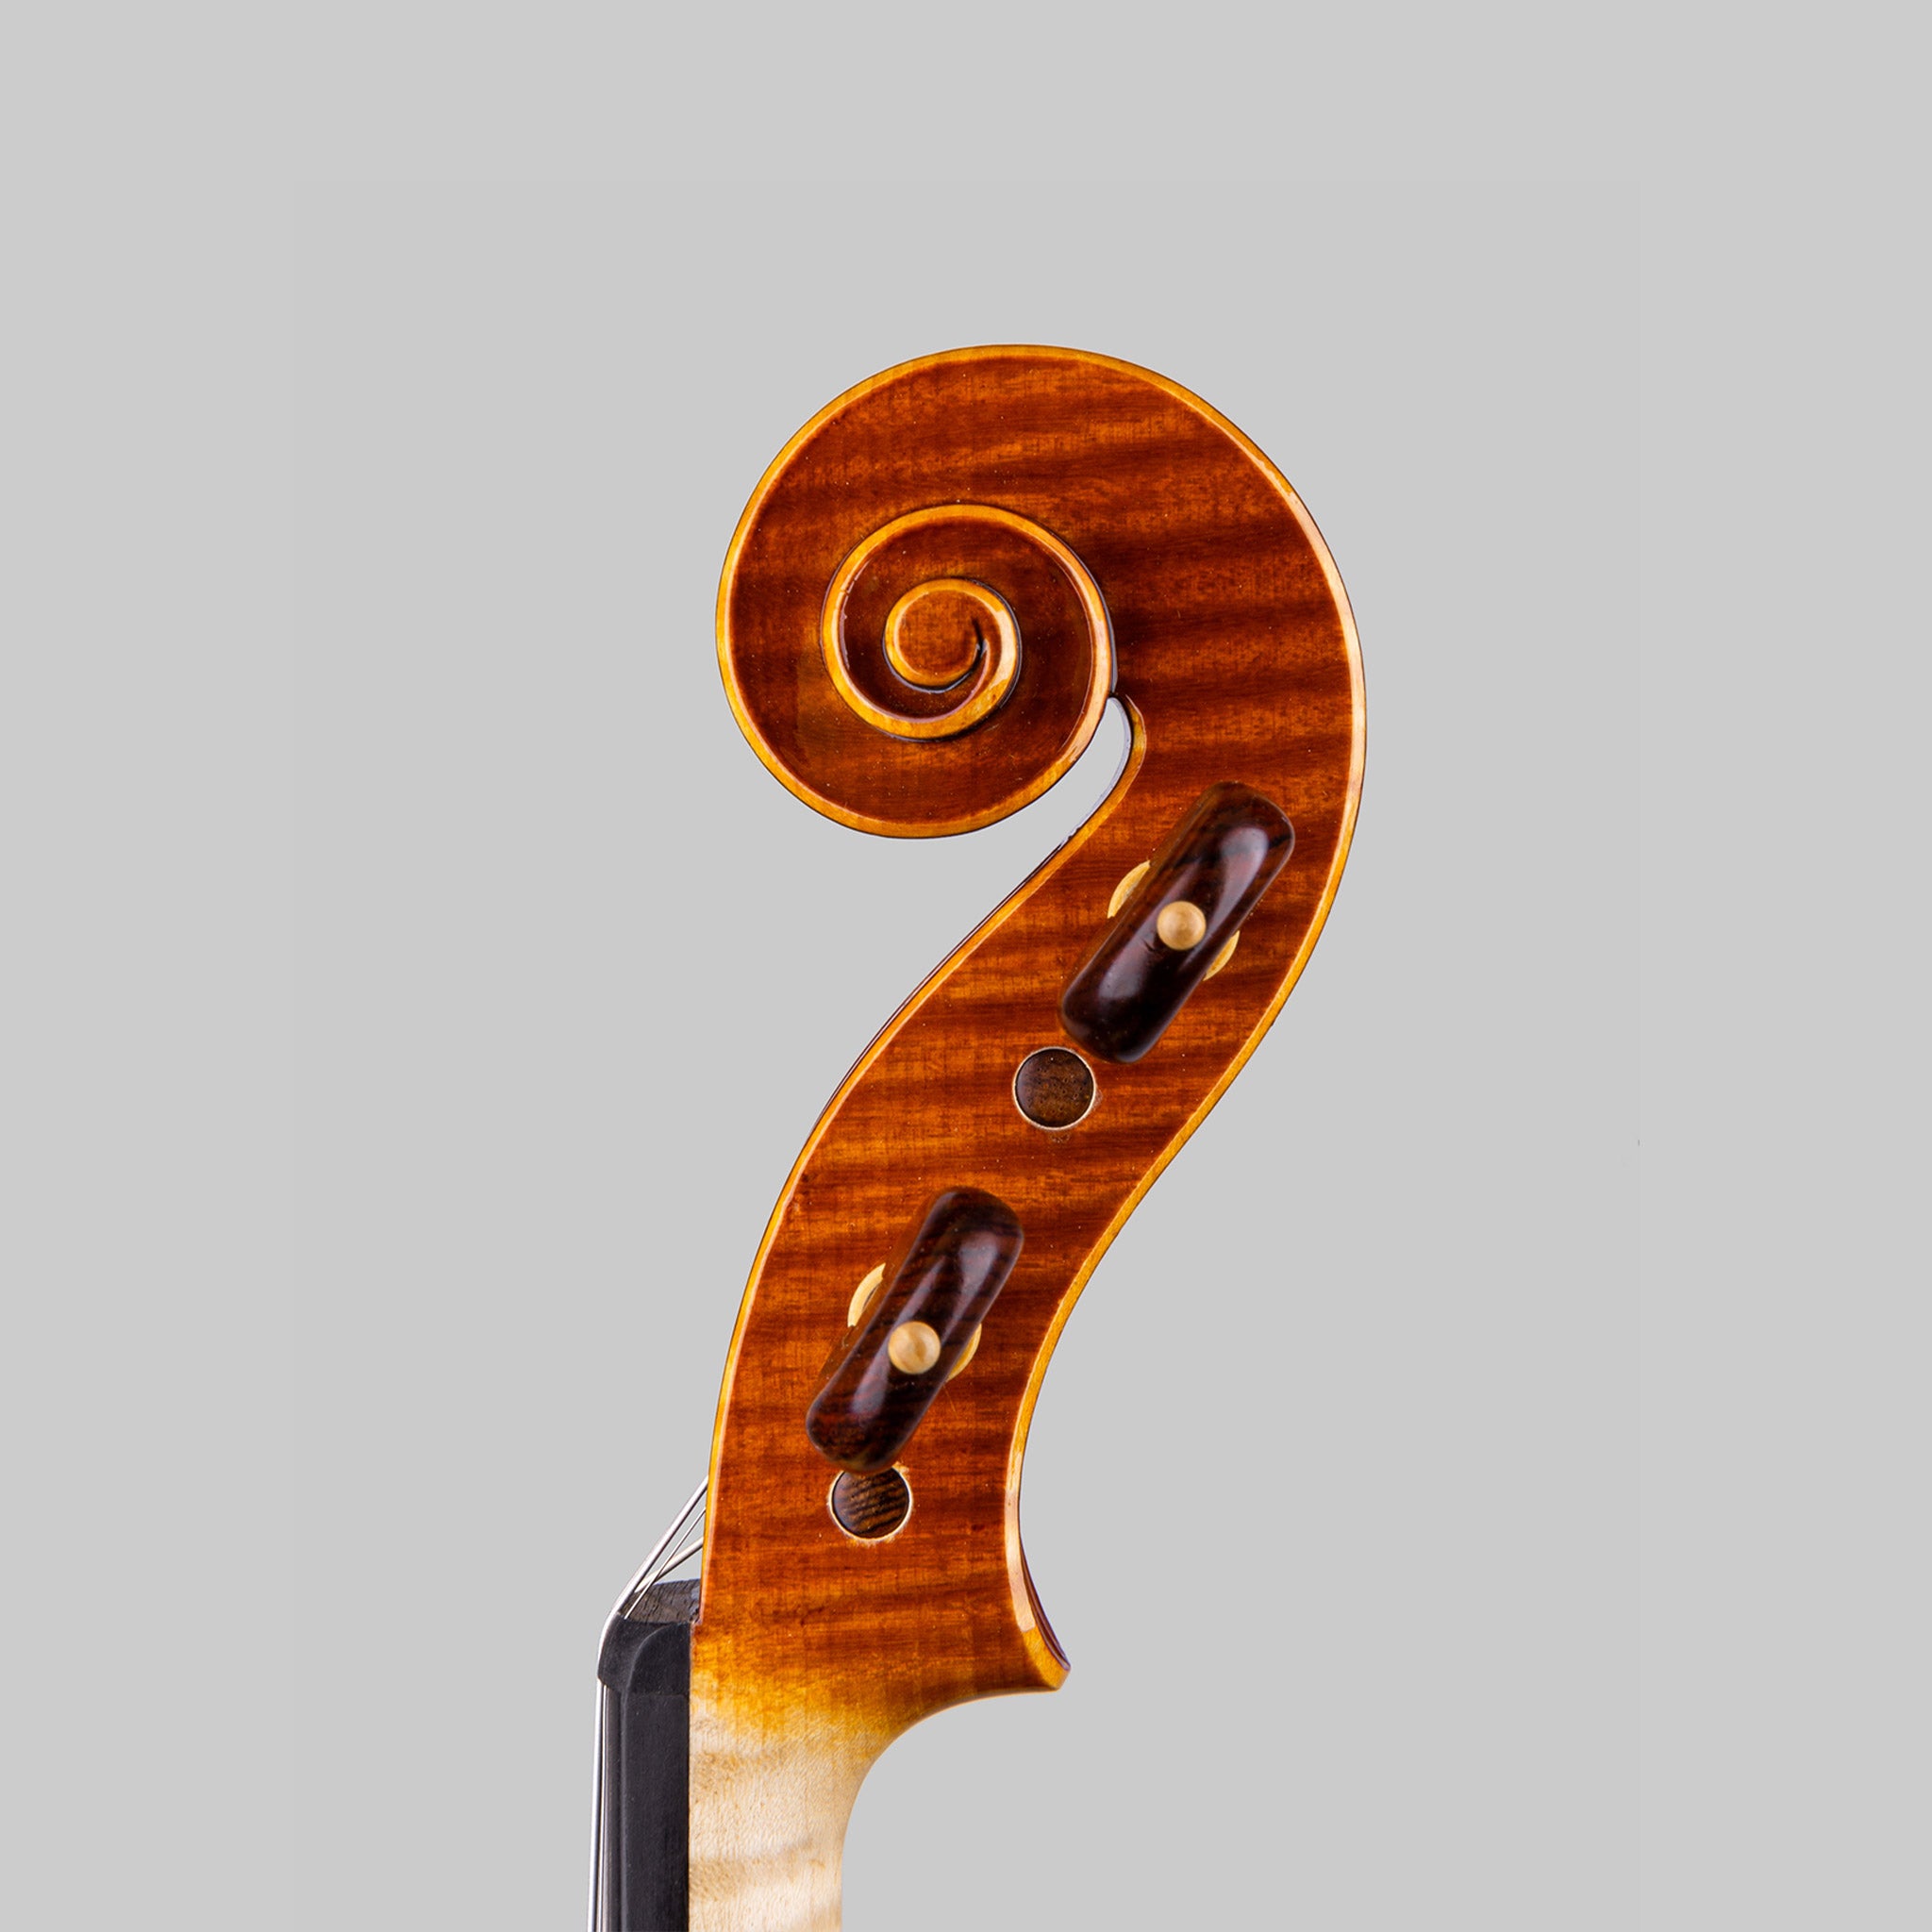 Marco Cargnelutti "Il Toscano" 2020 Violin